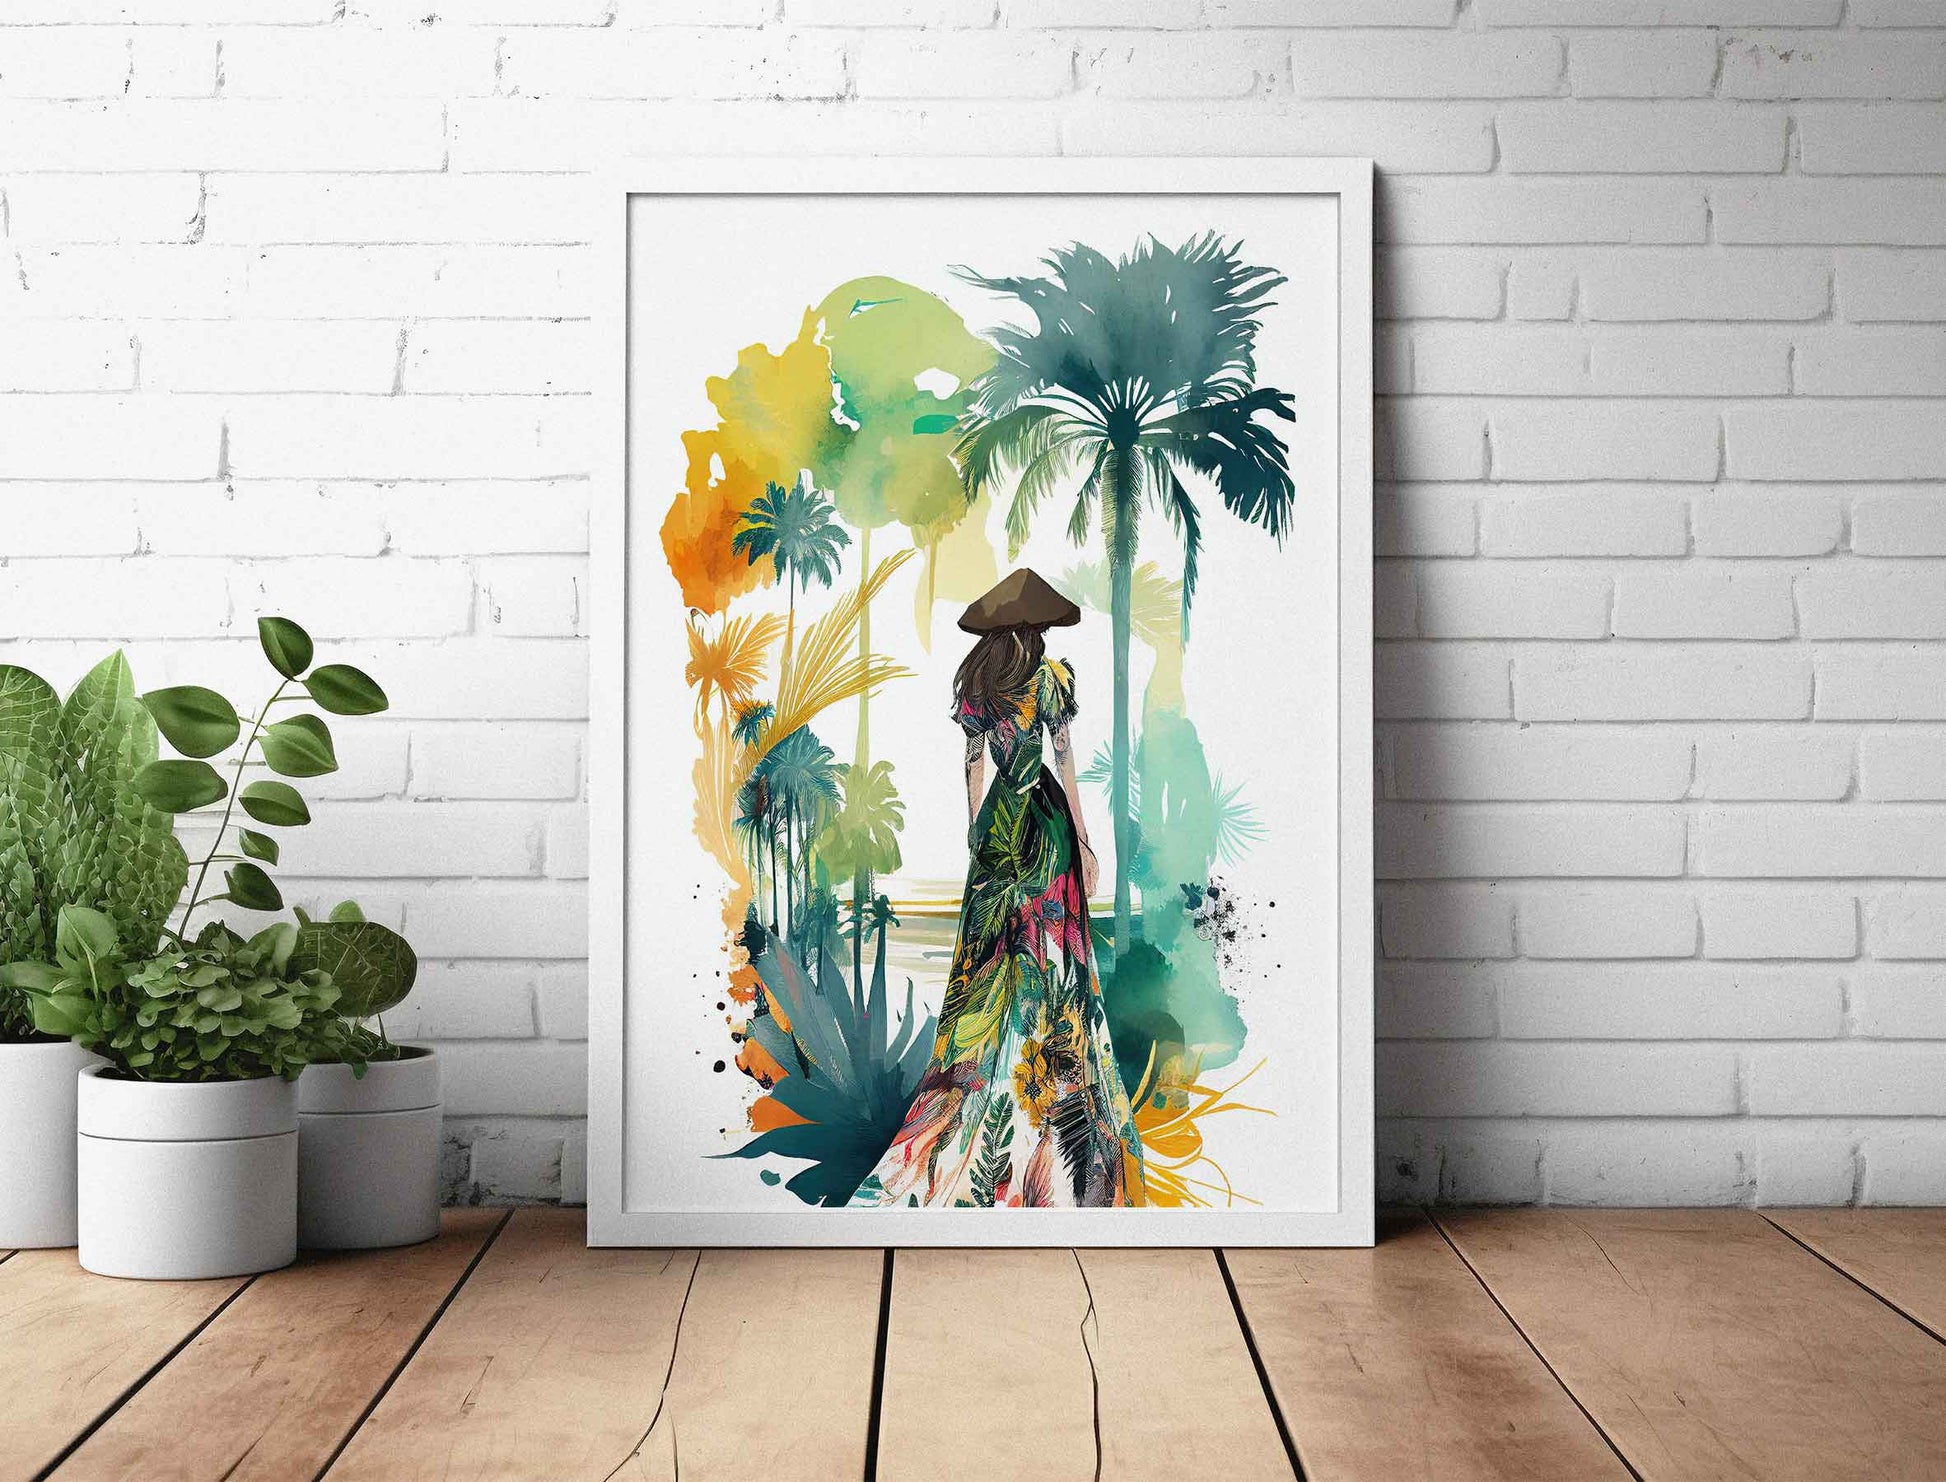 Framed Image of Boho Girl in Tropical Dress Illustration Wall Art Poster Print